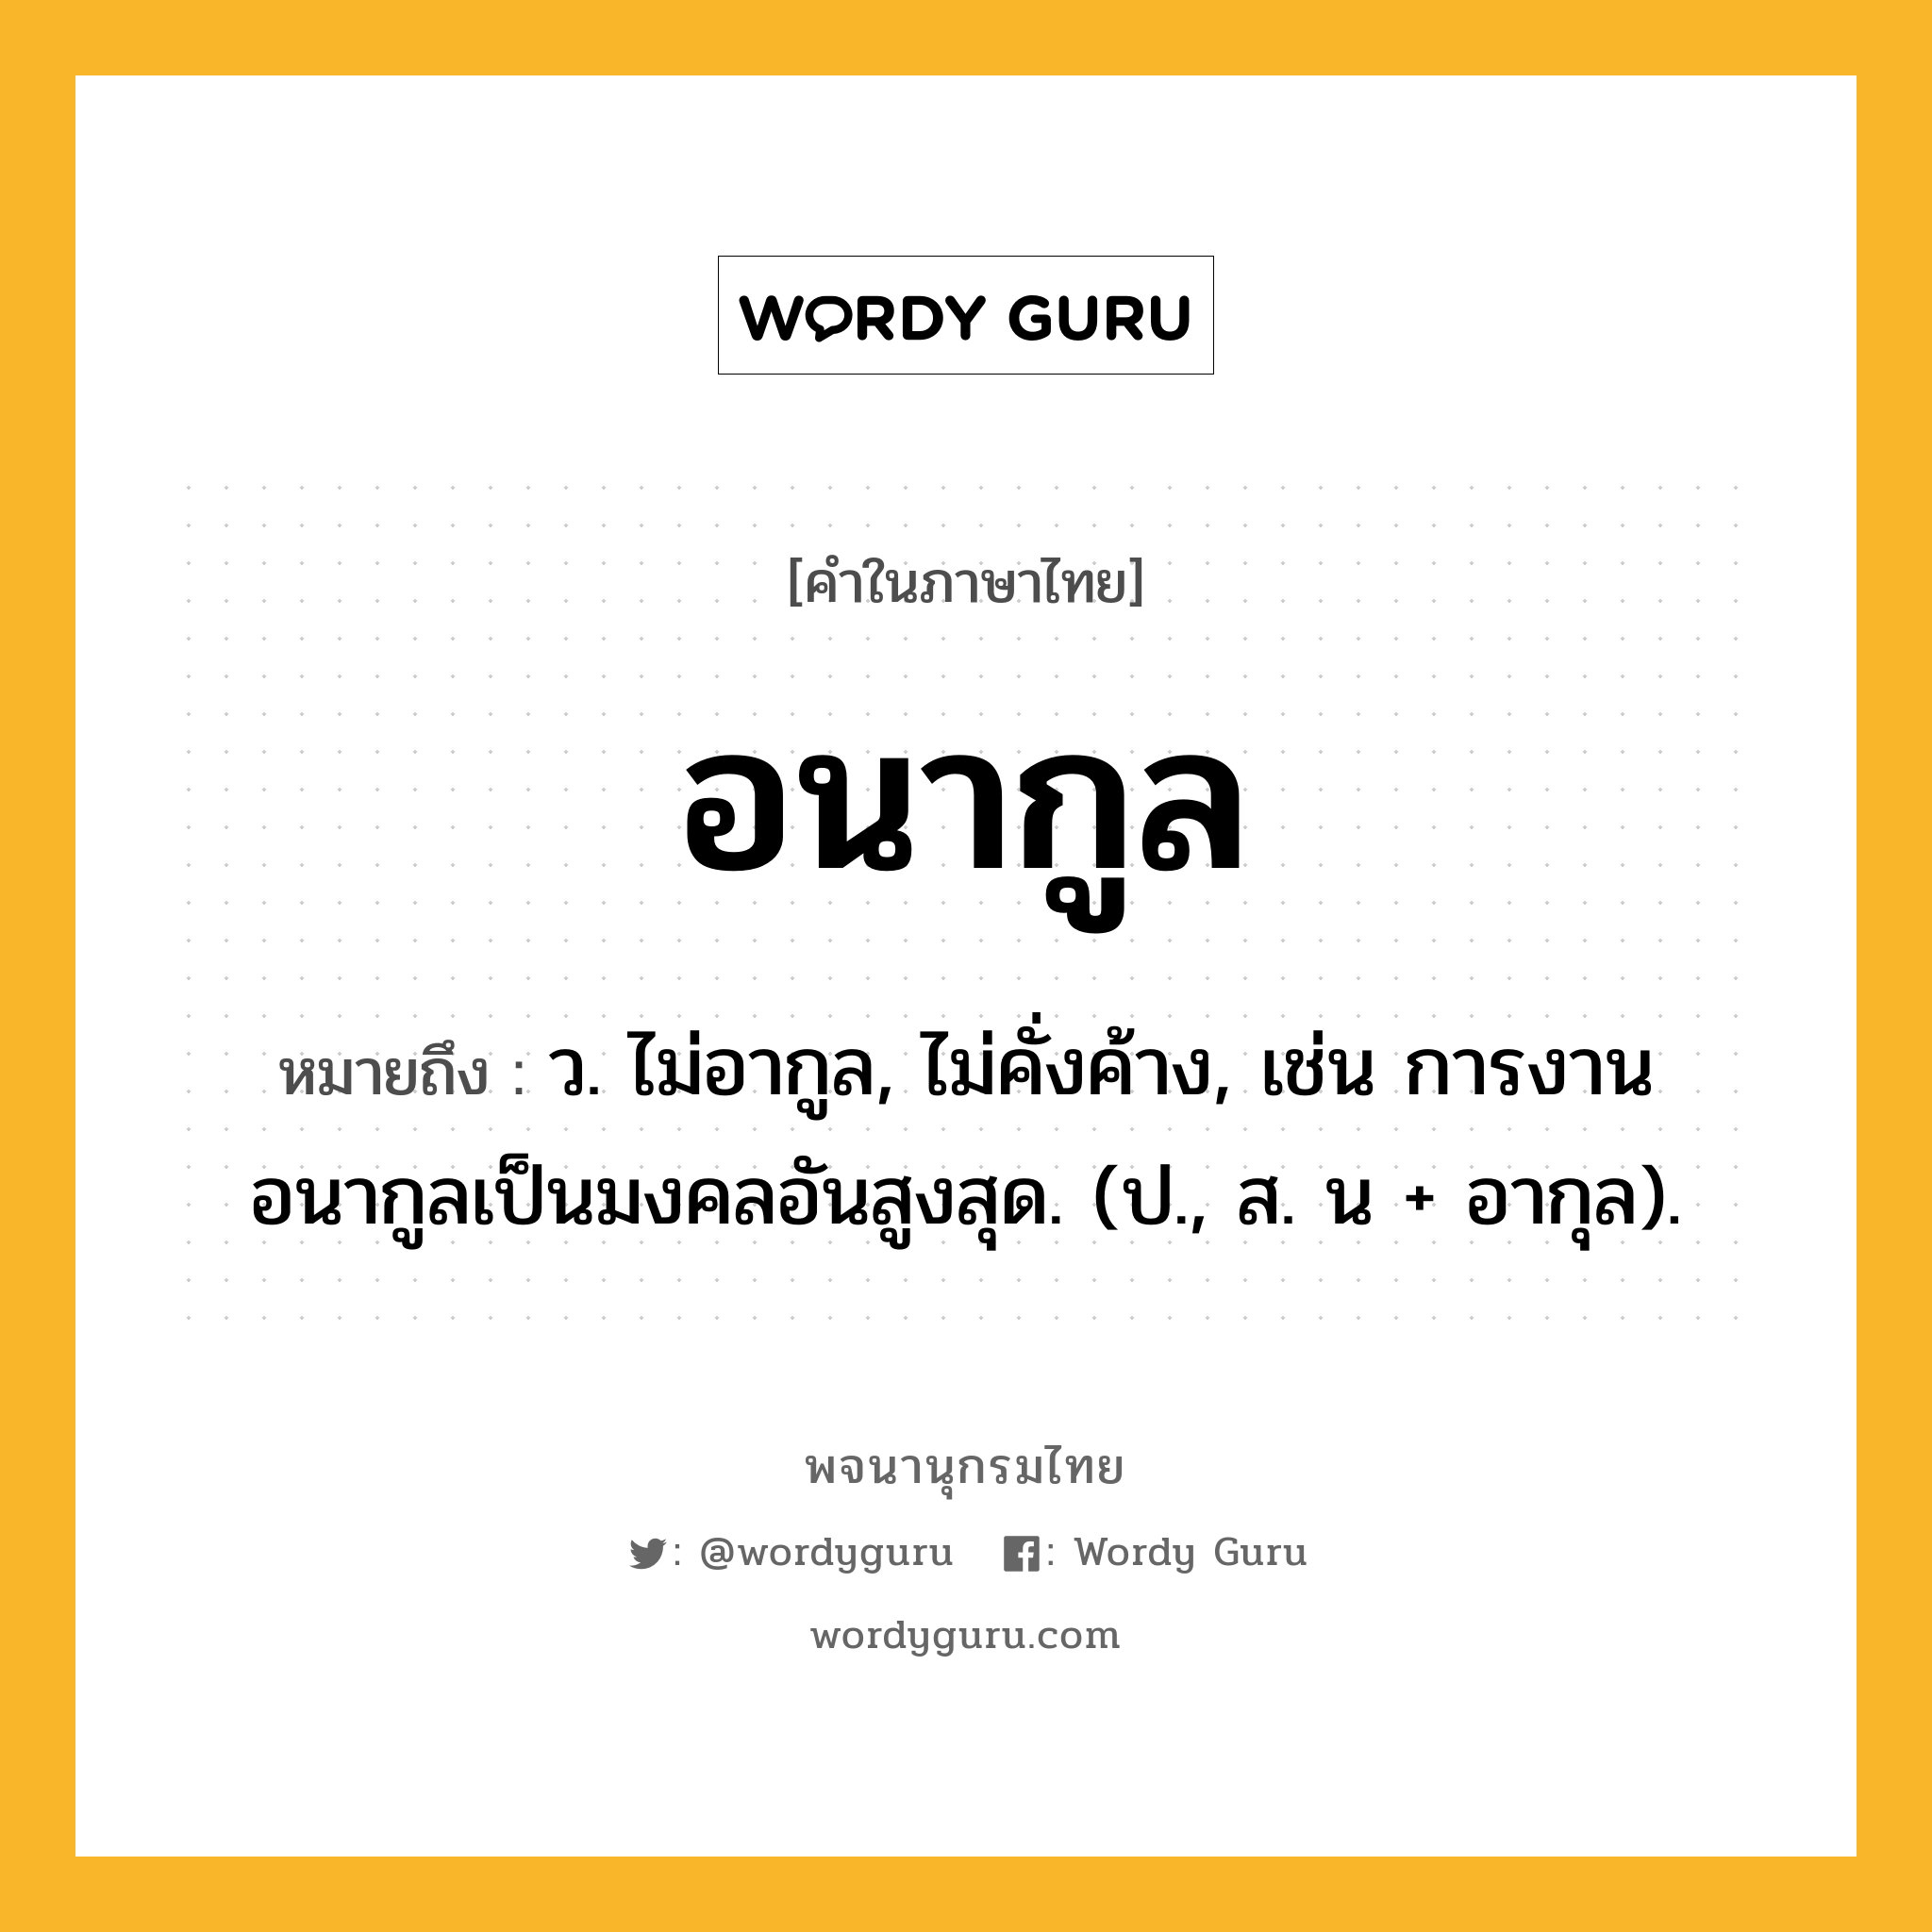 อนากูล ความหมาย หมายถึงอะไร?, คำในภาษาไทย อนากูล หมายถึง ว. ไม่อากูล, ไม่คั่งค้าง, เช่น การงานอนากูลเป็นมงคลอันสูงสุด. (ป., ส. น + อากุล).